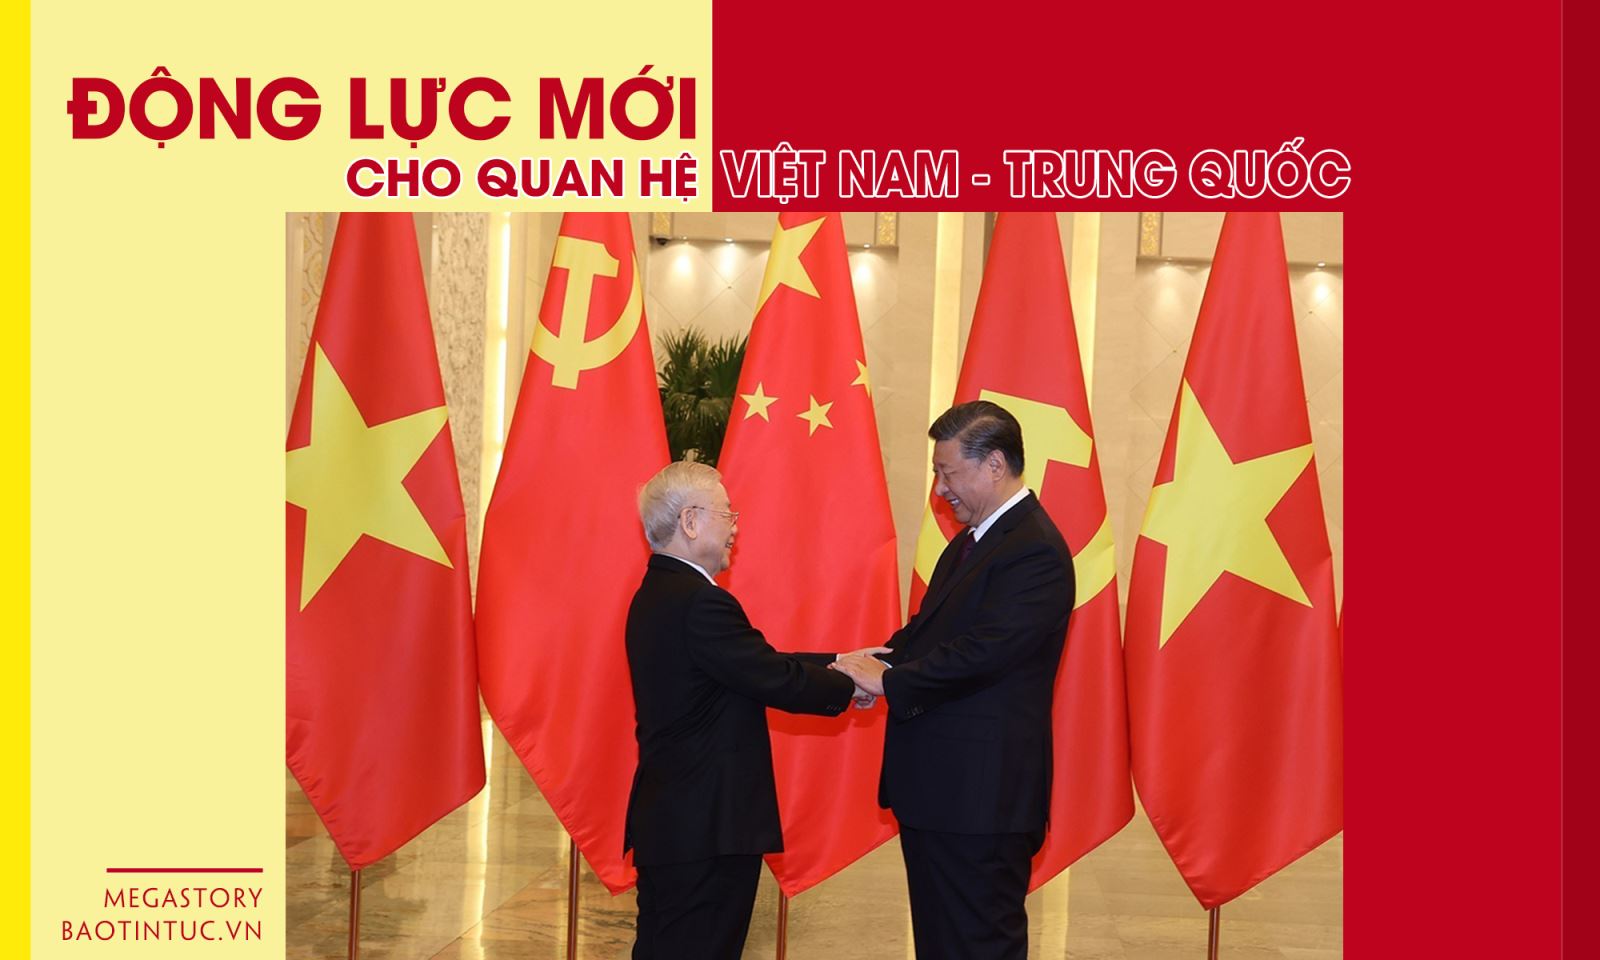 Quan hệ Việt Nam - Trung Quốc: Quan hệ Việt Nam - Trung Quốc đã phát triển và tiến bộ hơn bao giờ hết. Các lãnh đạo của hai nước đã thực hiện những cuộc gặp gỡ và kiến tạo ra những tiền đề giải quyết tranh chấp, điều này cho thấy tình hữu nghị của hai dân tộc. Sự hợp tác giữa hai nước cũng đóng góp một phần lớn vào sự phát triển kinh tế và xã hội của cả hai quốc gia.